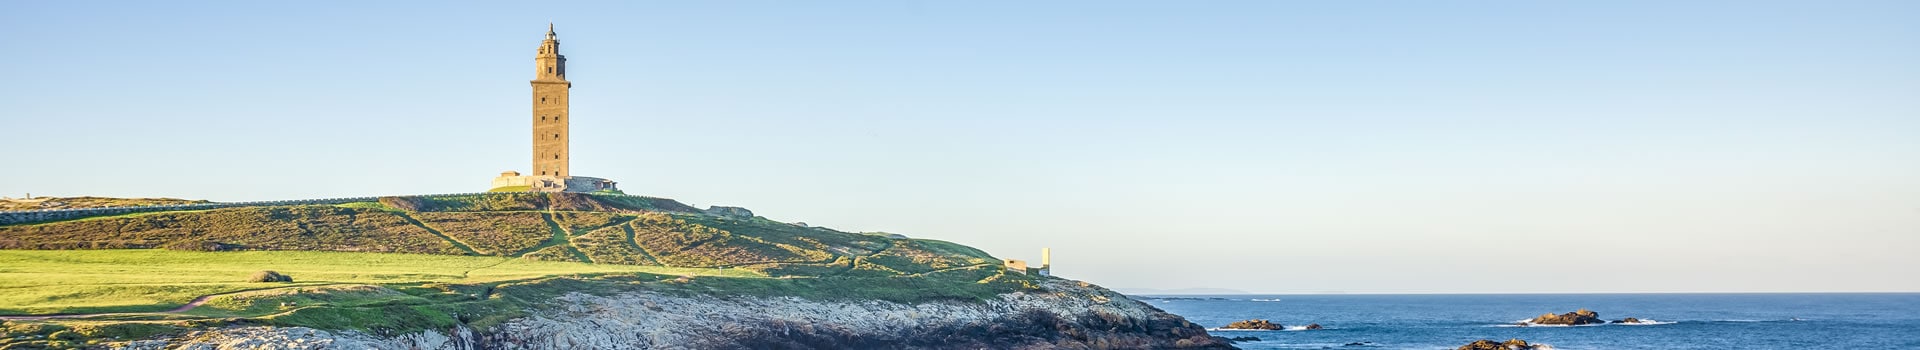 Menorca - Corunha